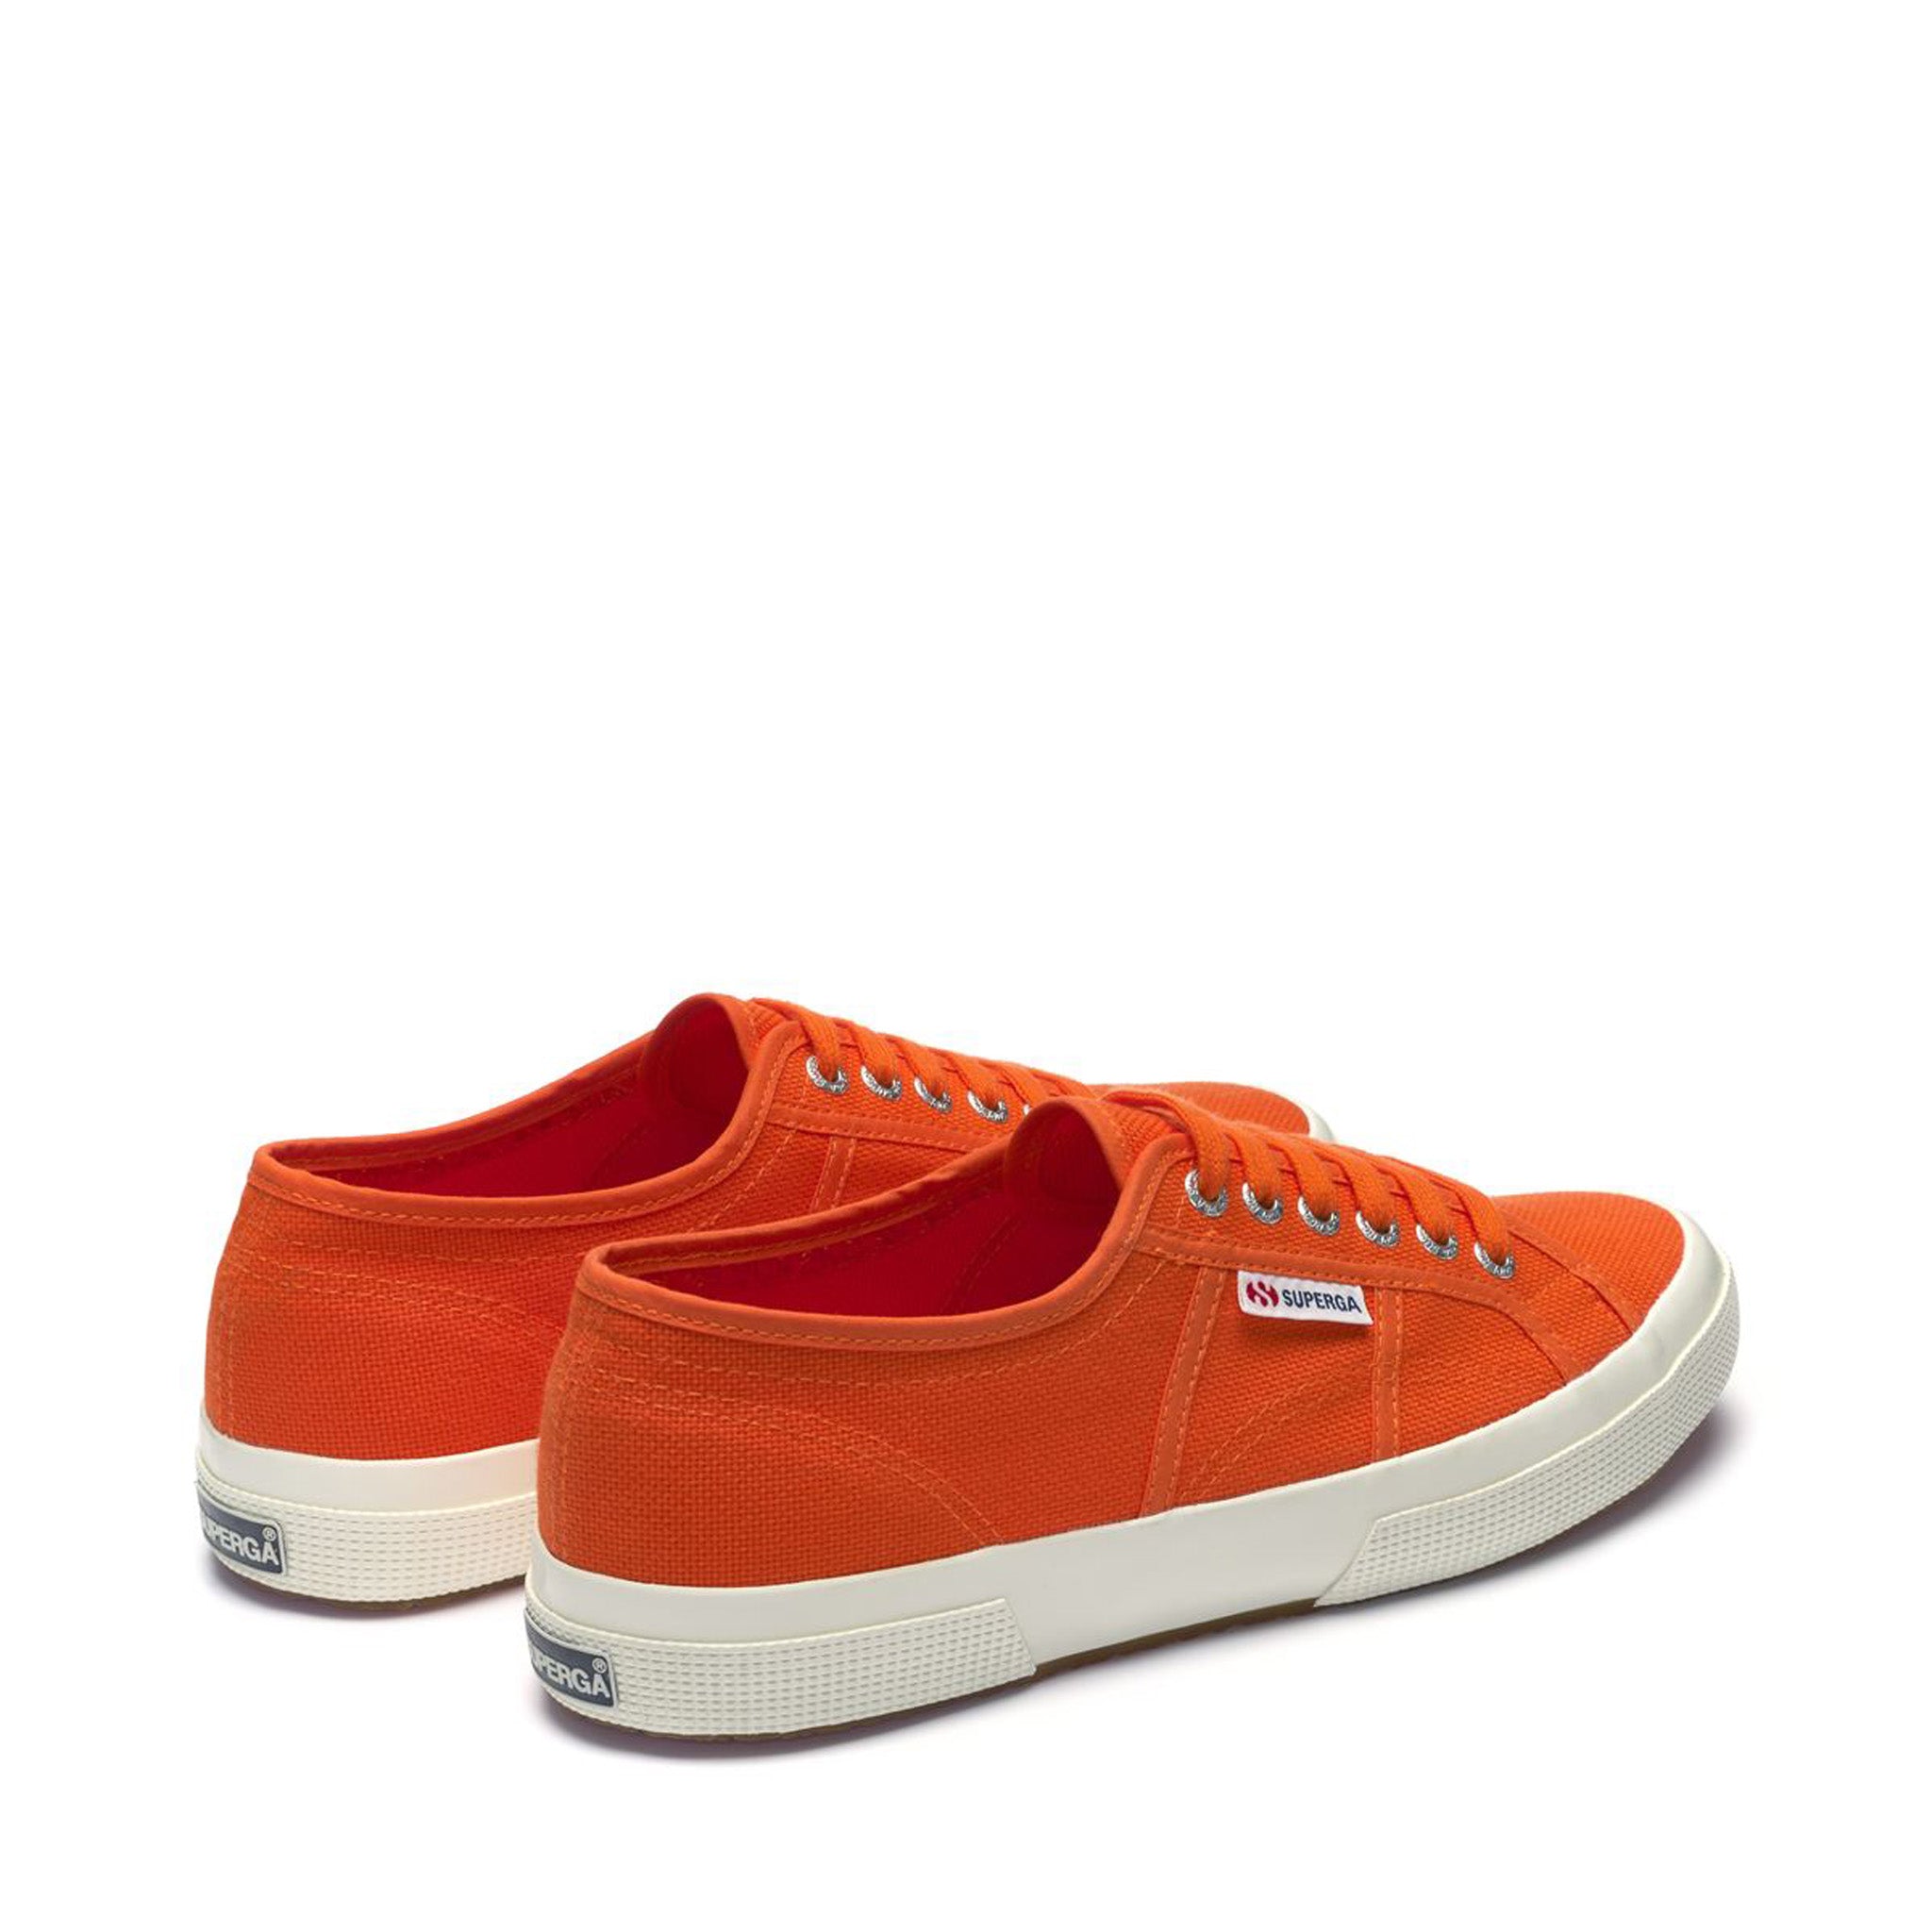 2750 Cotu Classic Sneakers - Orange Avorio – Superga US